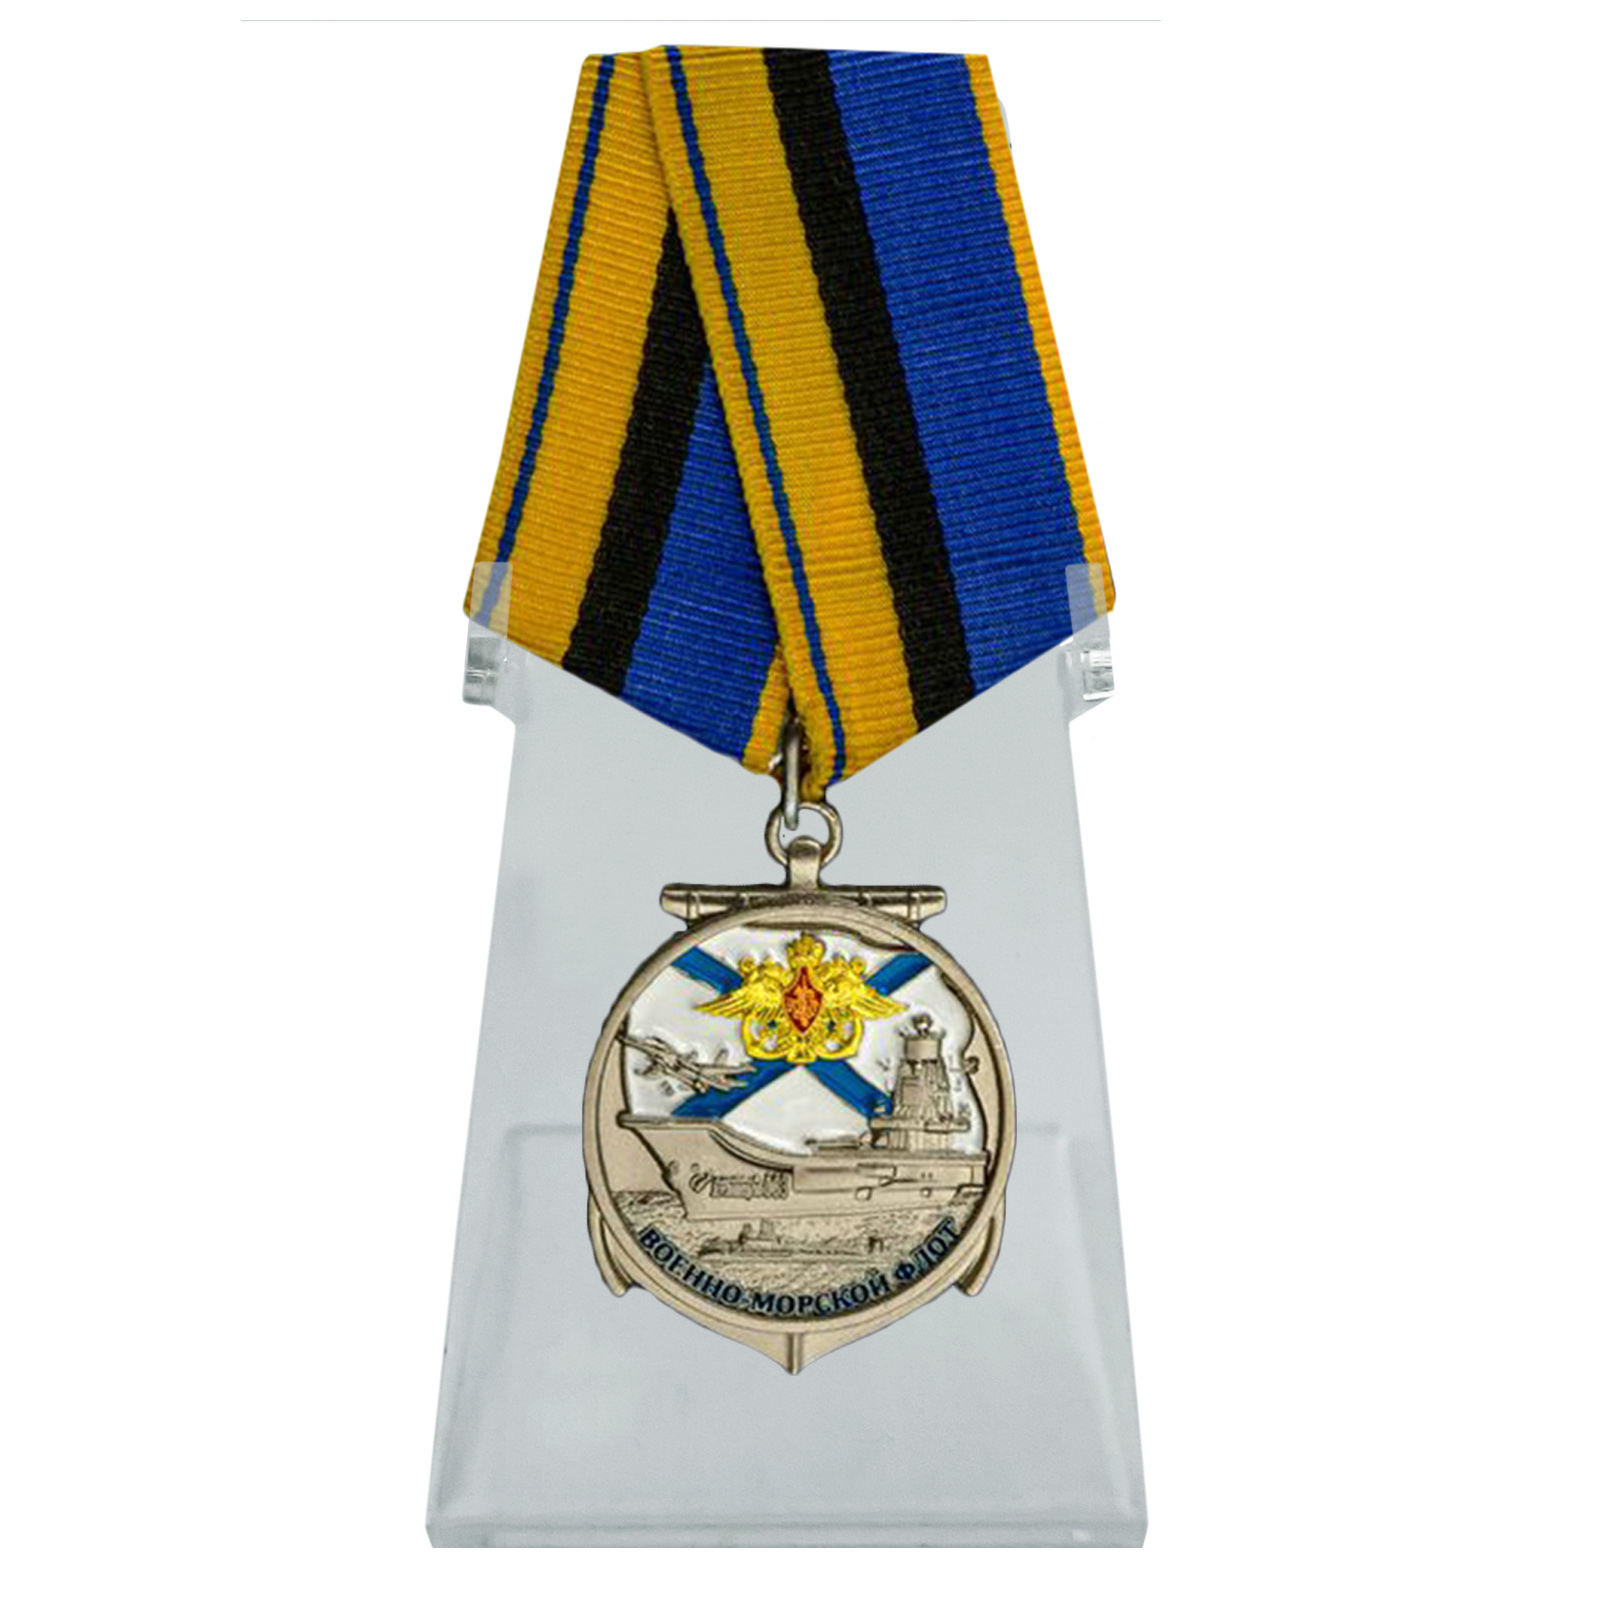 Медаль "Военно-морской флот" на подставке